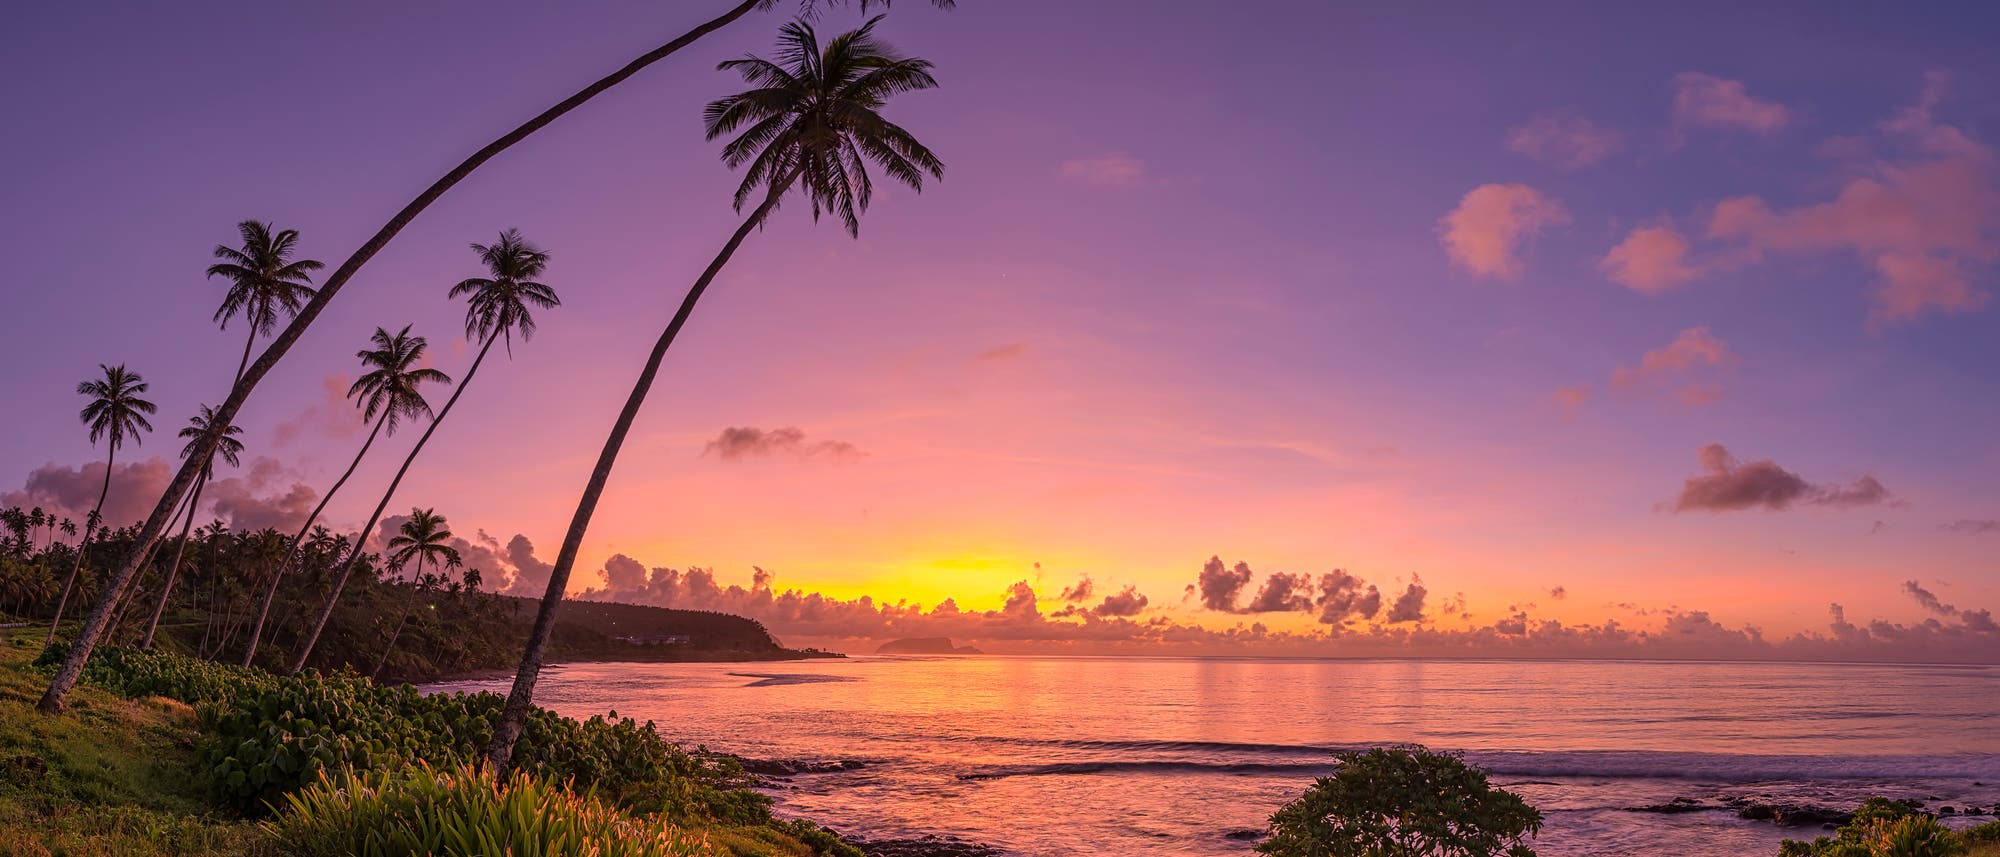 Untergang auf Samoa - in diesem Fall der Sonne